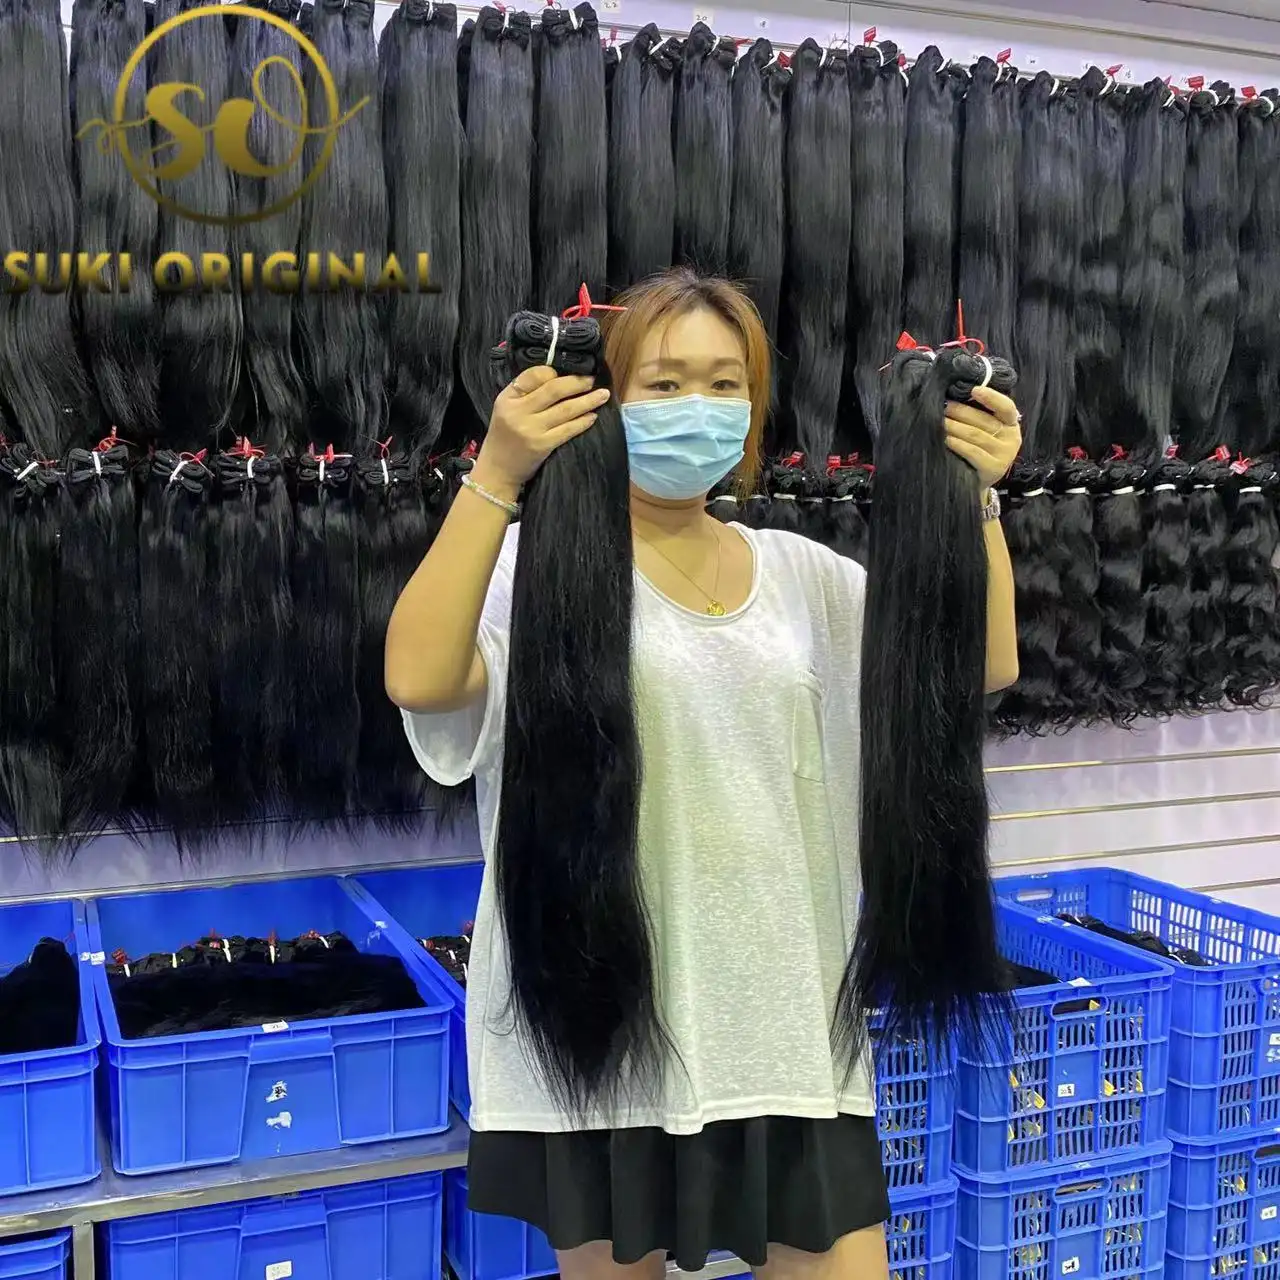 Недорогие 100% натуральные вьетнамские волосы, двойное натяжение, необработанные индийские волосы, человеческие волосы, оптовая продажа, Поставщик необработанных волос